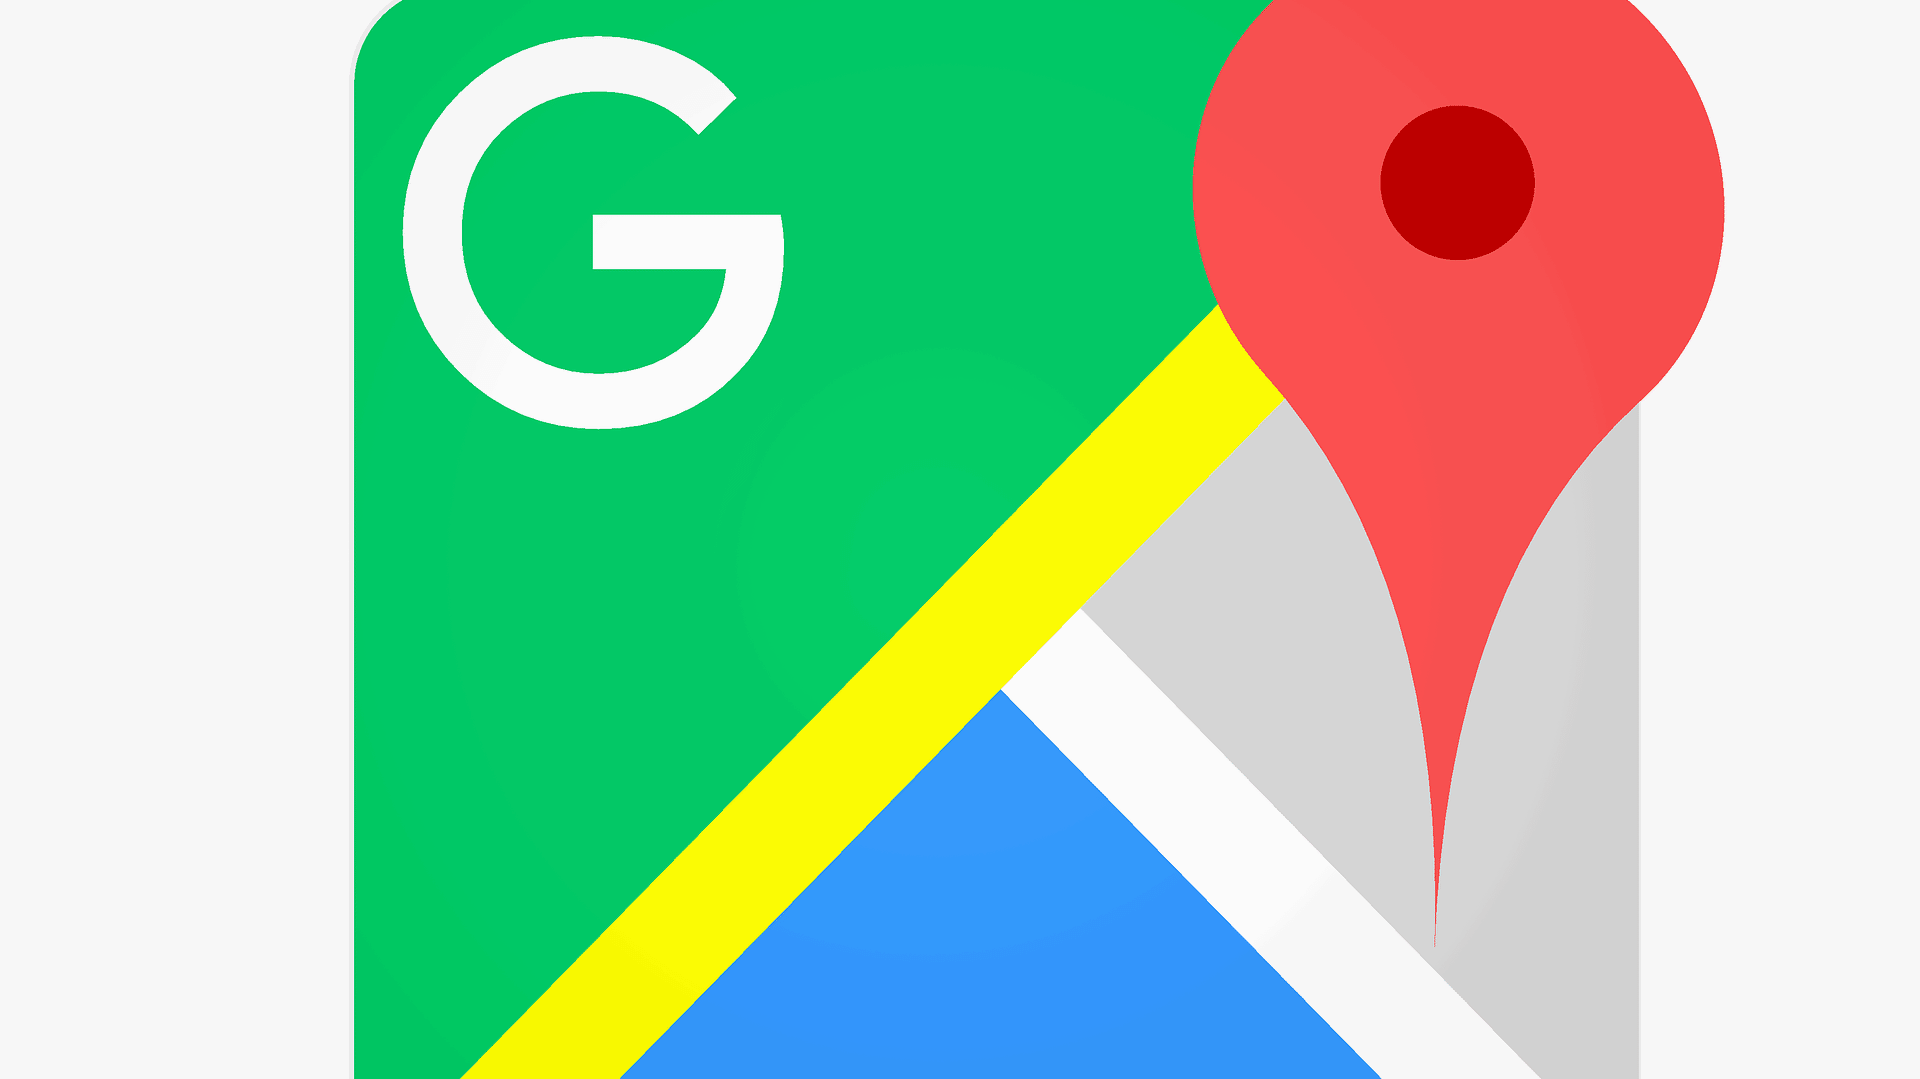 Chrome maps. Гугл игры значок. Google Maps. Google Mao. Значок гугл АДС.